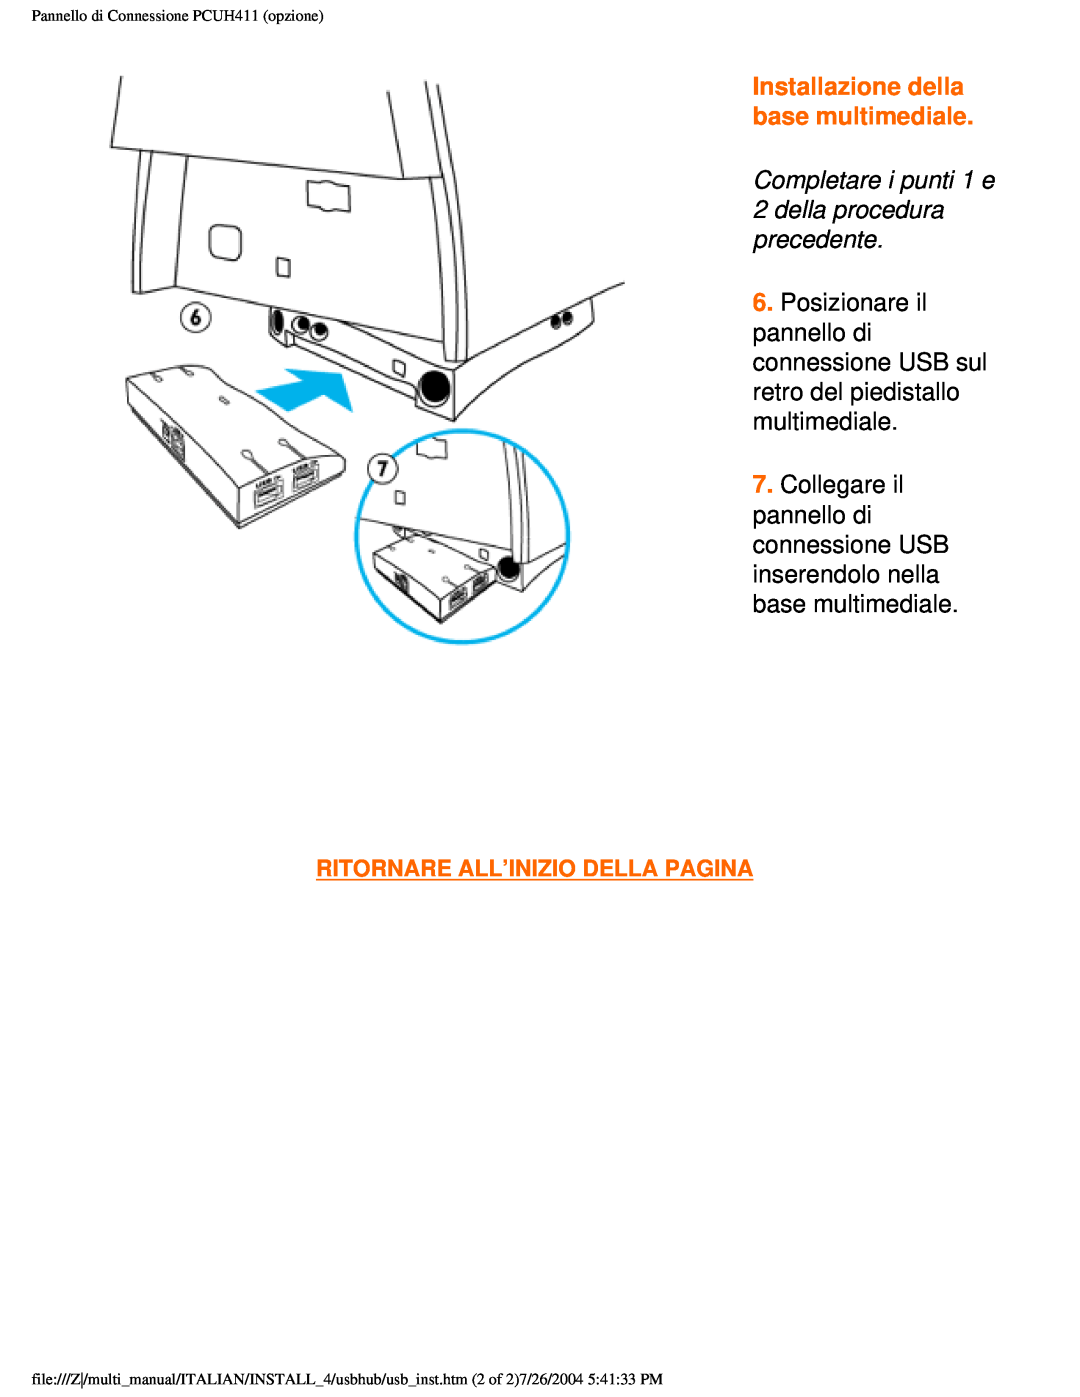 Philips 201B user manual Installazione della base multimediale, Ritornare All’Inizio Della Pagina 